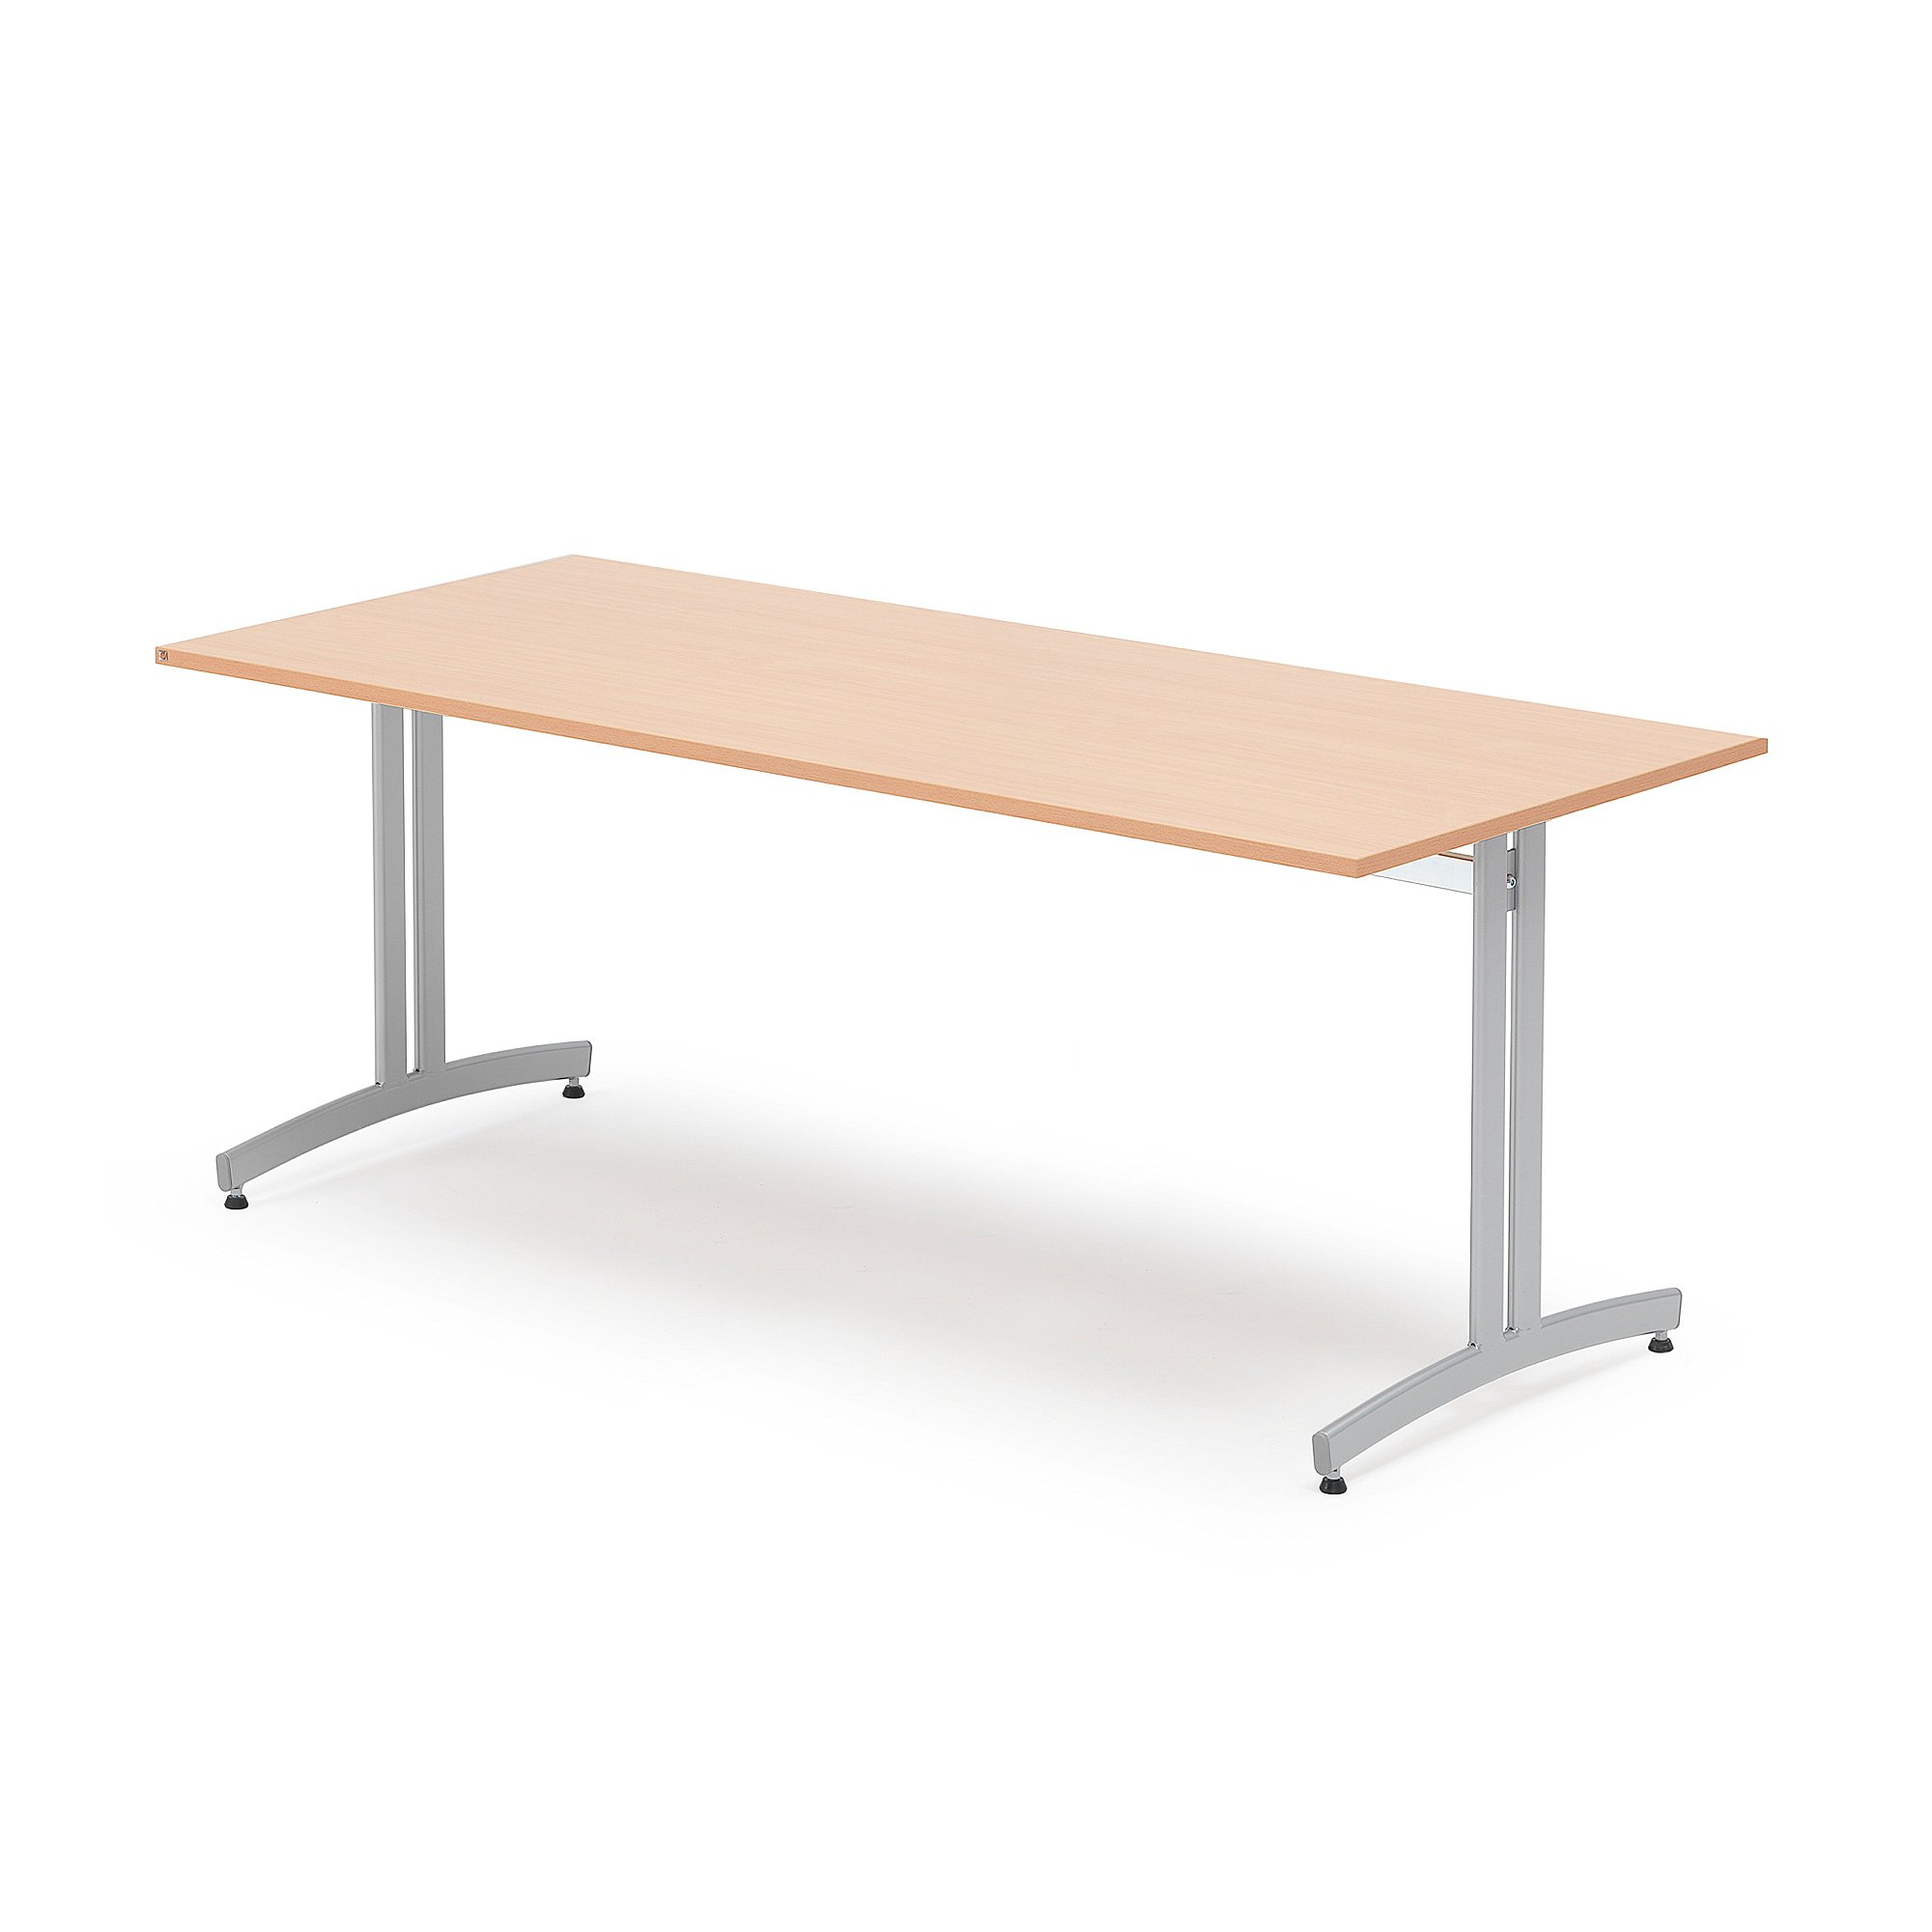 Stôl SANNA, 1800x800x720 mm, strieborná/buk